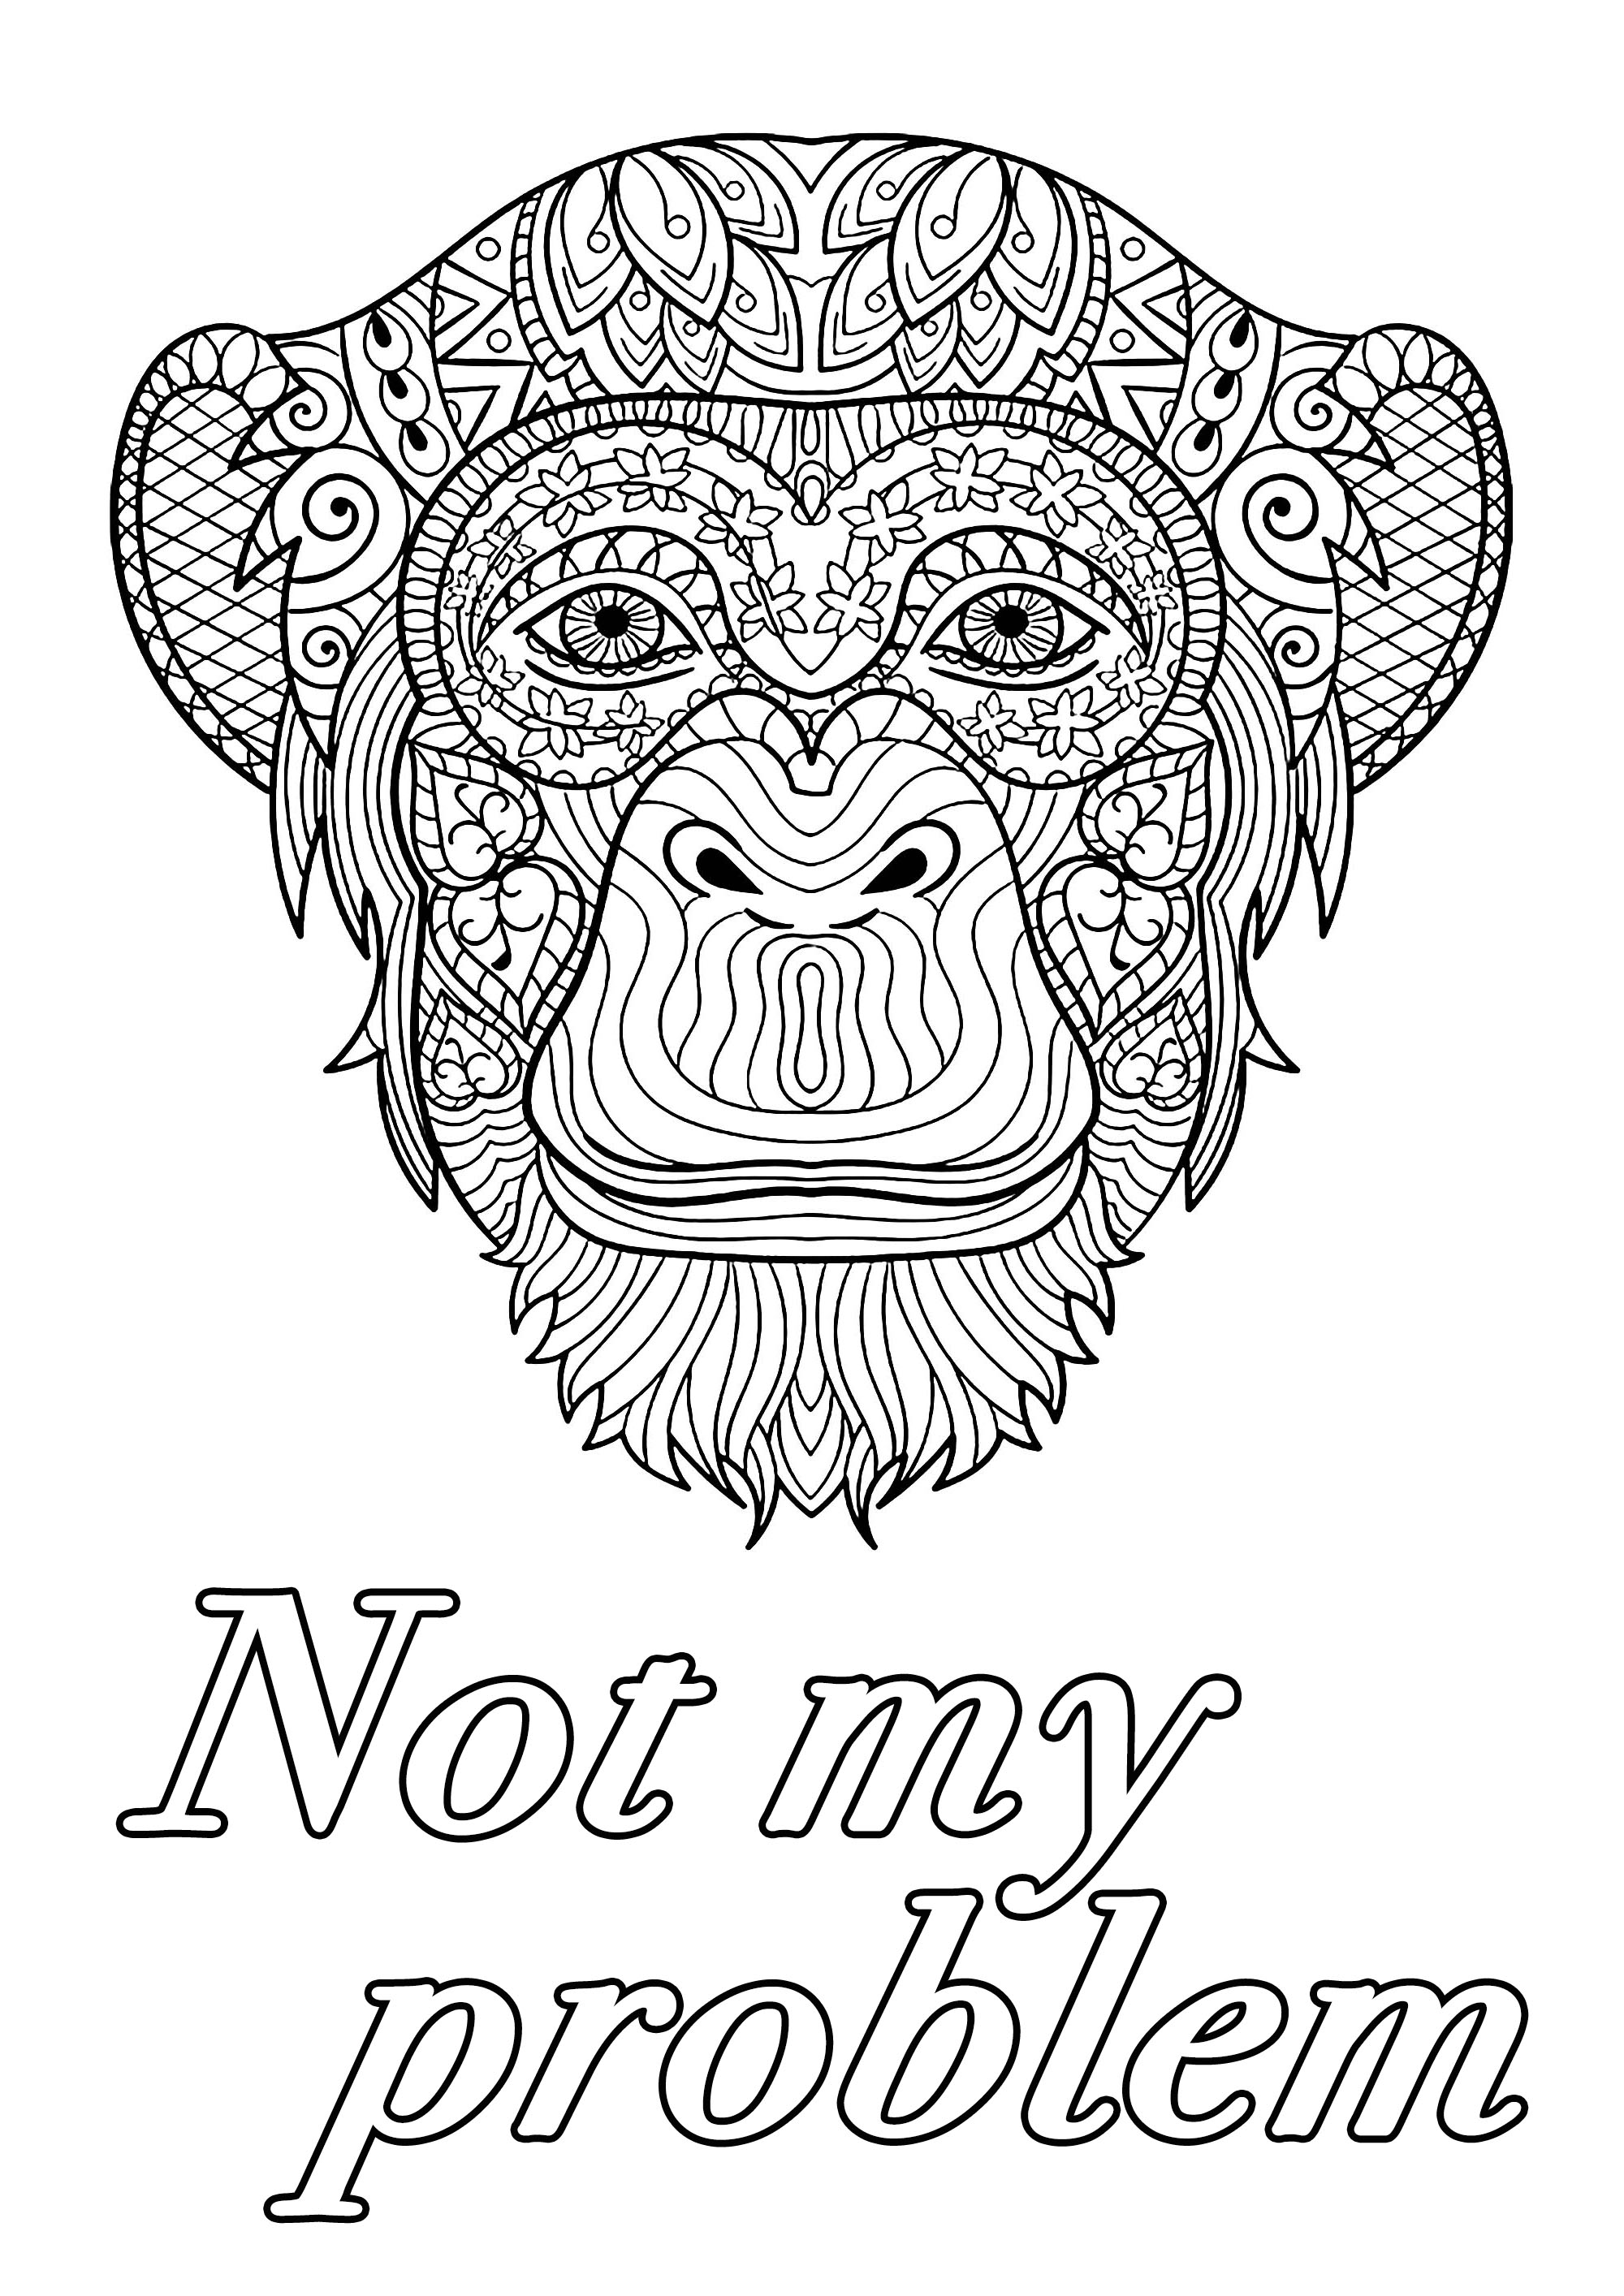 O problema não é meu : Desenhos de palavrões para colorir com uma grande cabeça de macaco